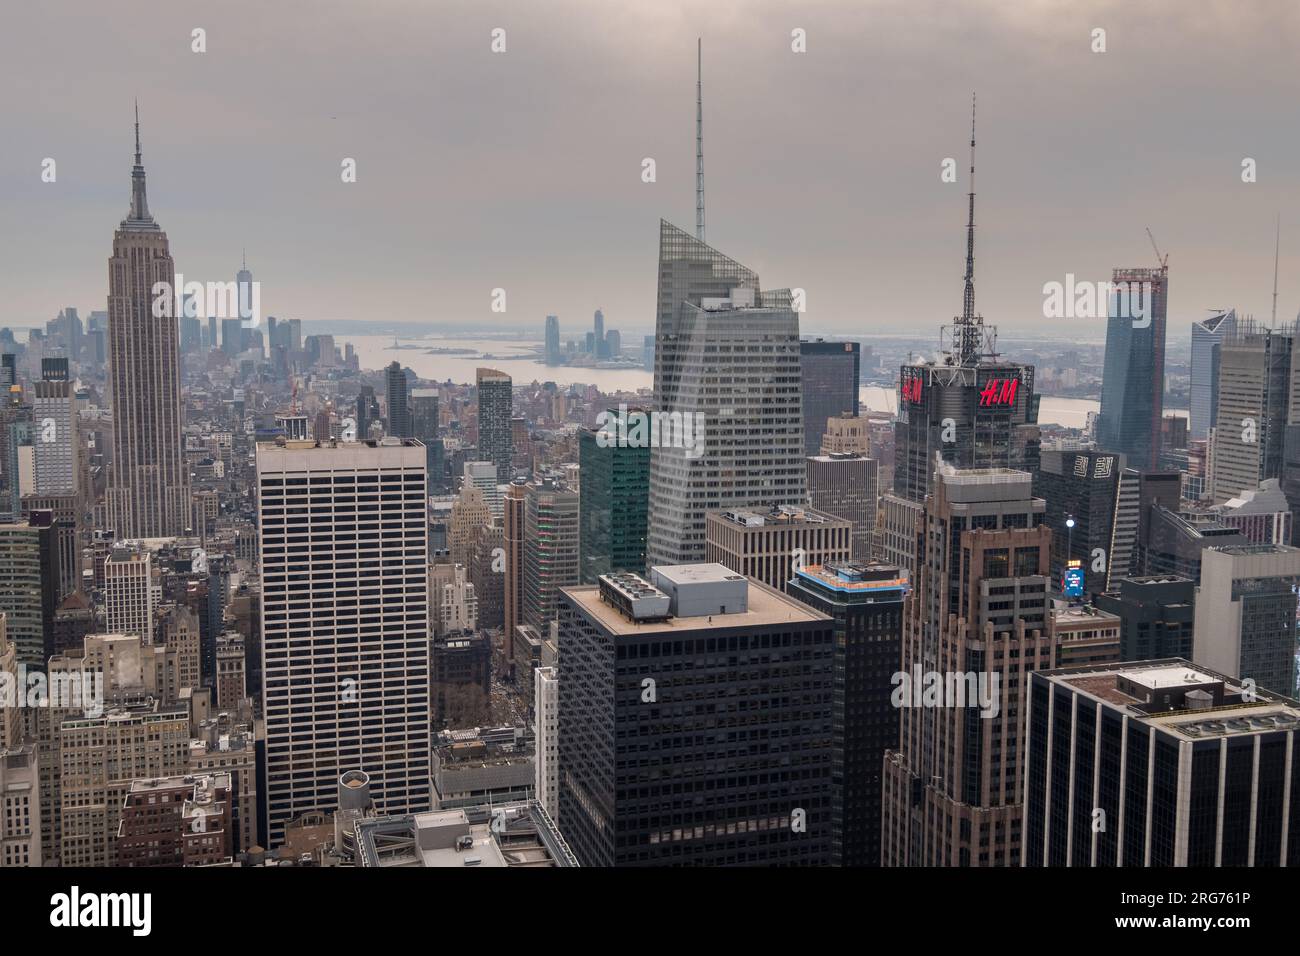 Manhattan, New York, USA - 9 décembre 2018 : vue classique depuis le haut du bâtiment Top of the Rock vers le sud de l'île de Manhattan. Banque D'Images